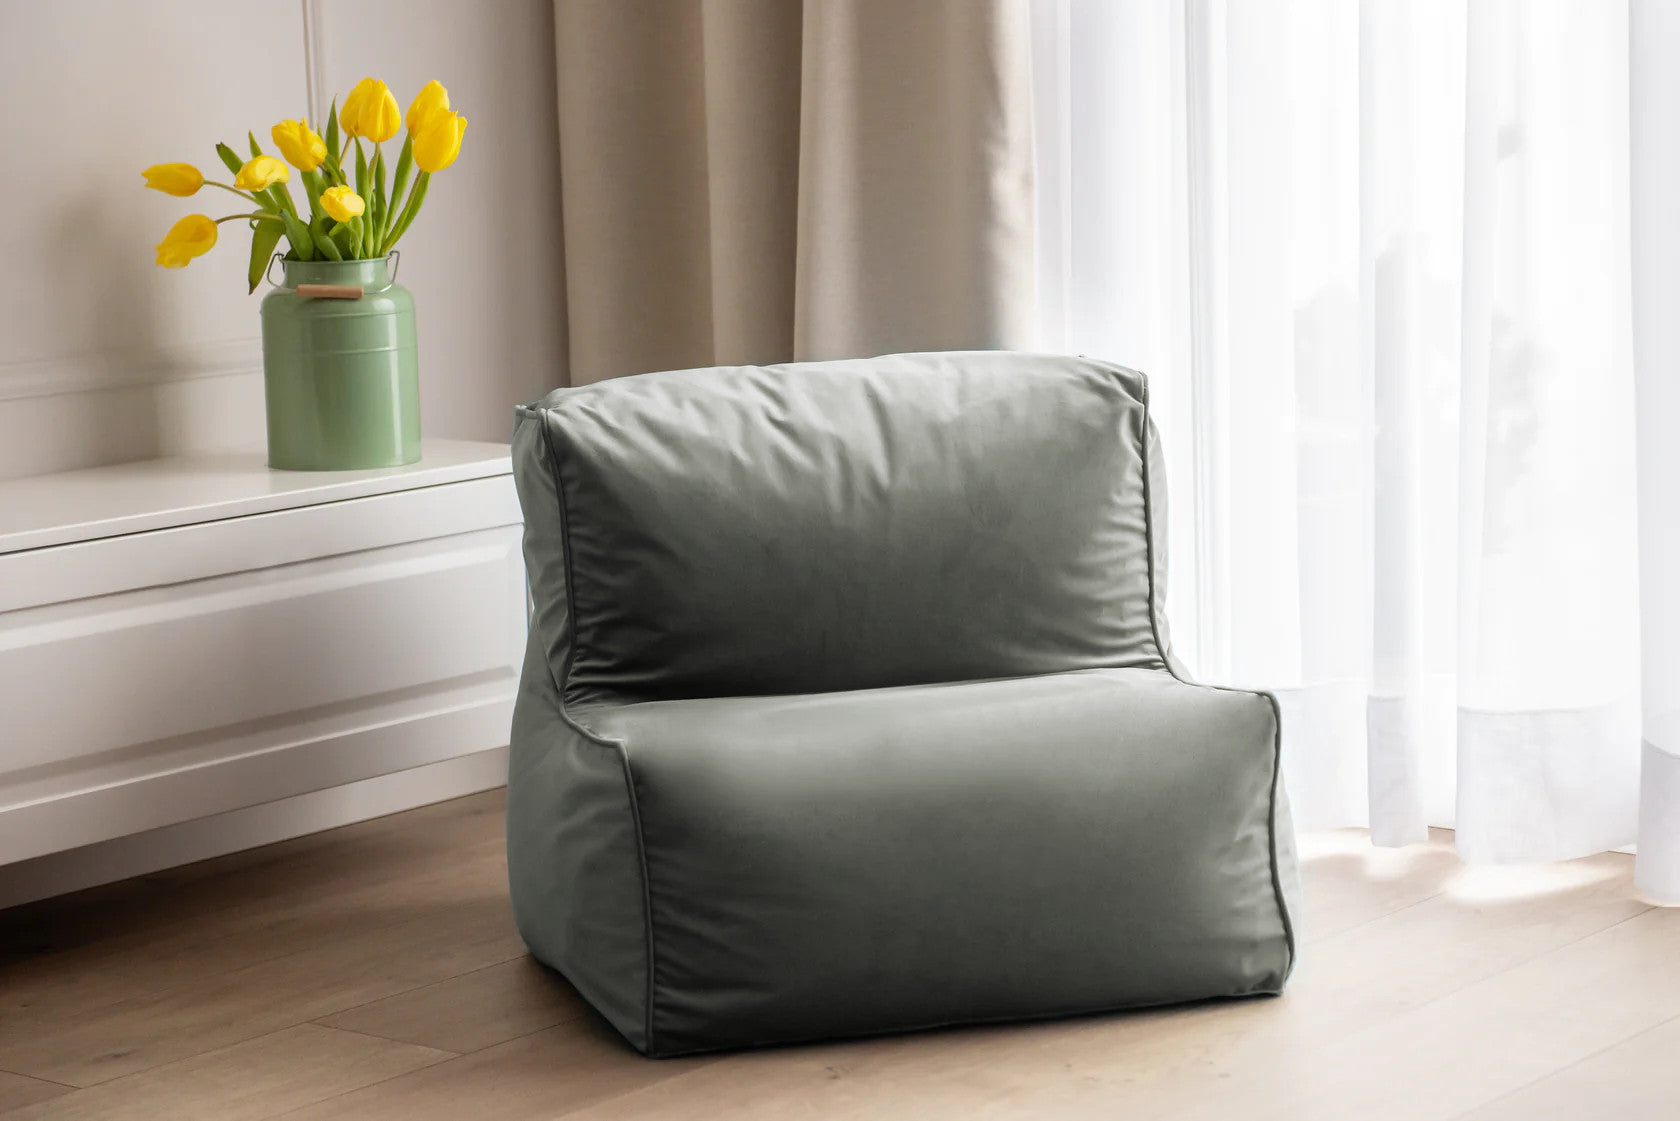 Modułowy Fotel Pufa ELKA Velvet - Aksamitny Komfort i Estetyka, Idealny do Każdego Wnętrza, Dostępny w Różnych Kolorach